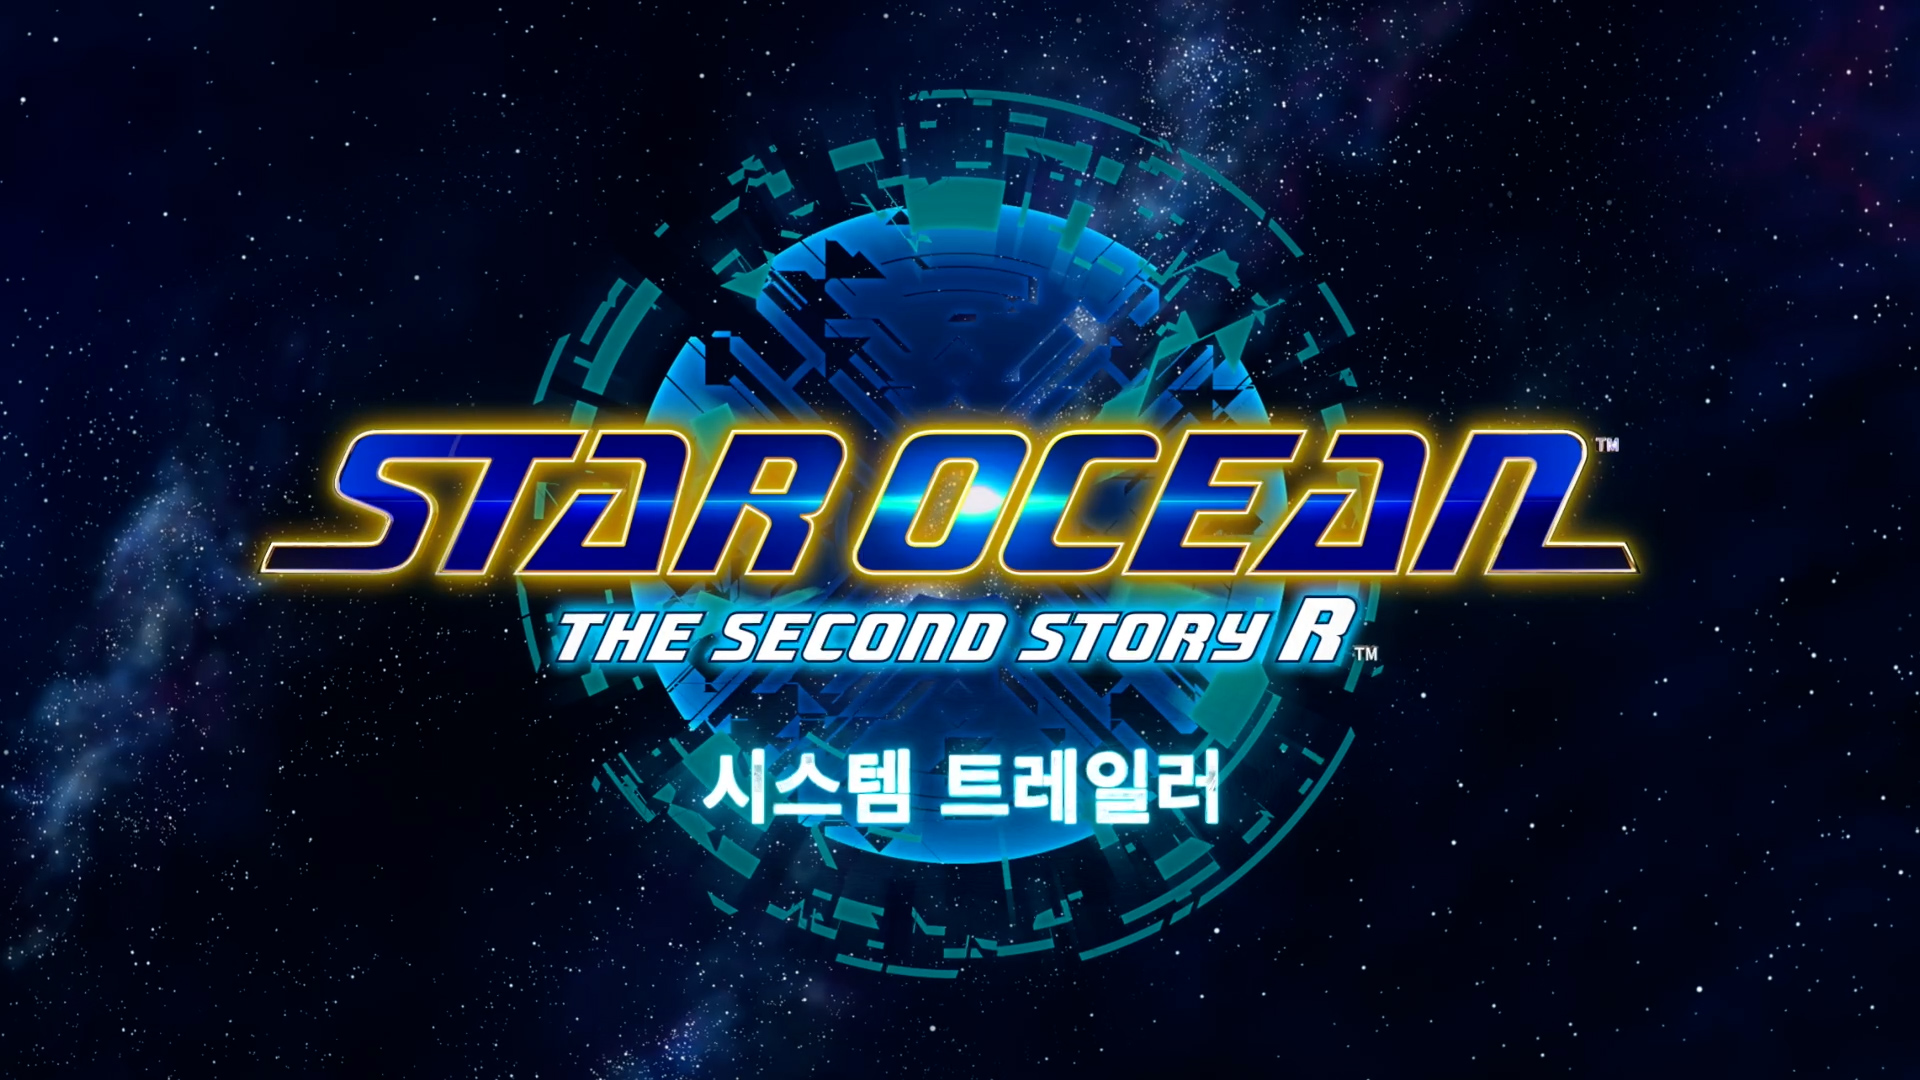 『STAR OCEAN THE SECOND STORY R』
시스템 트레일러 공개!

